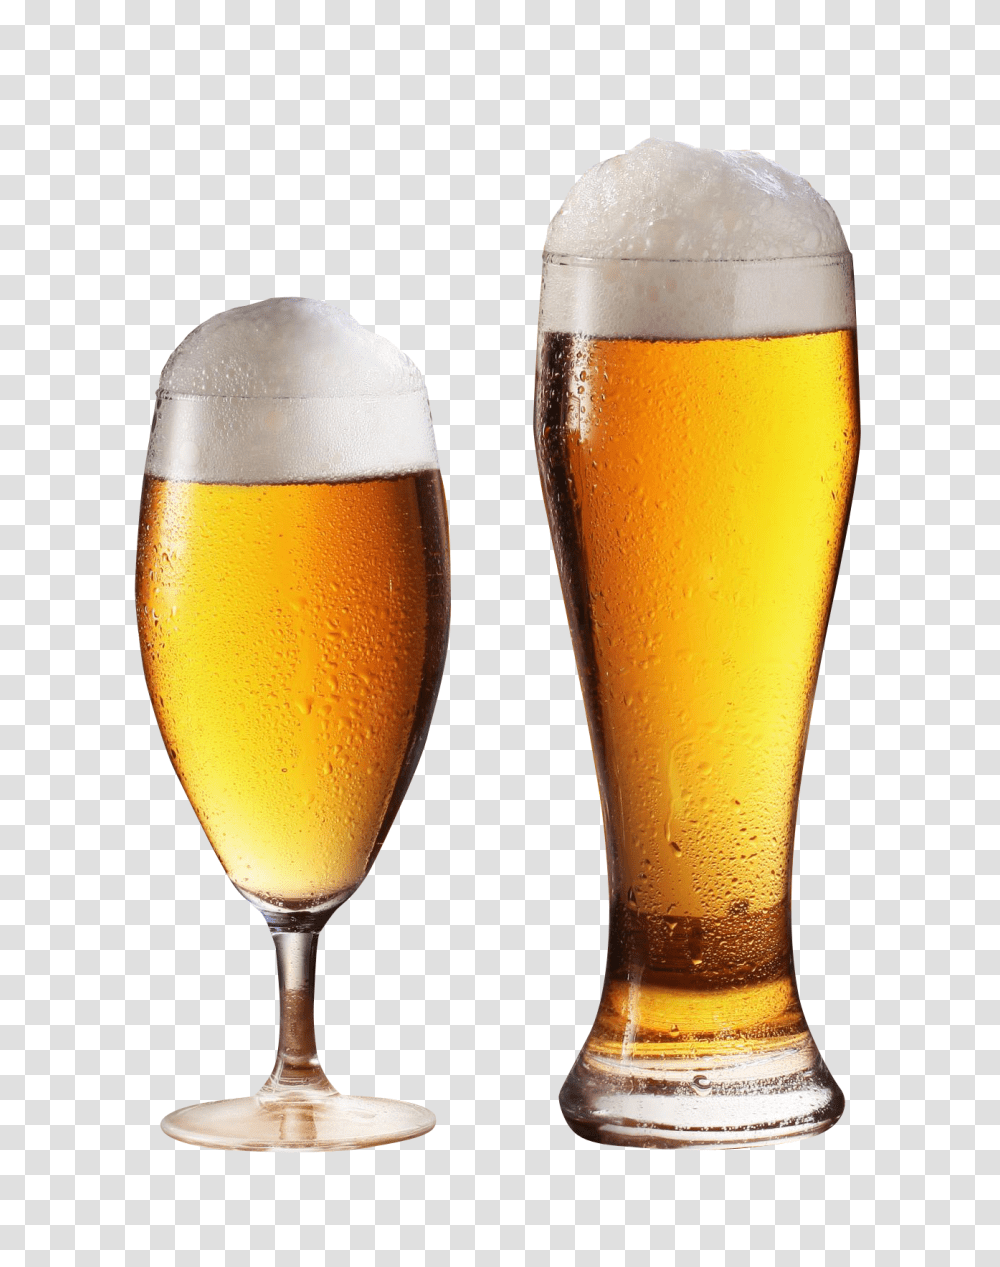 Beer Glass Image, Drink, Alcohol, Beverage, Lager Transparent Png